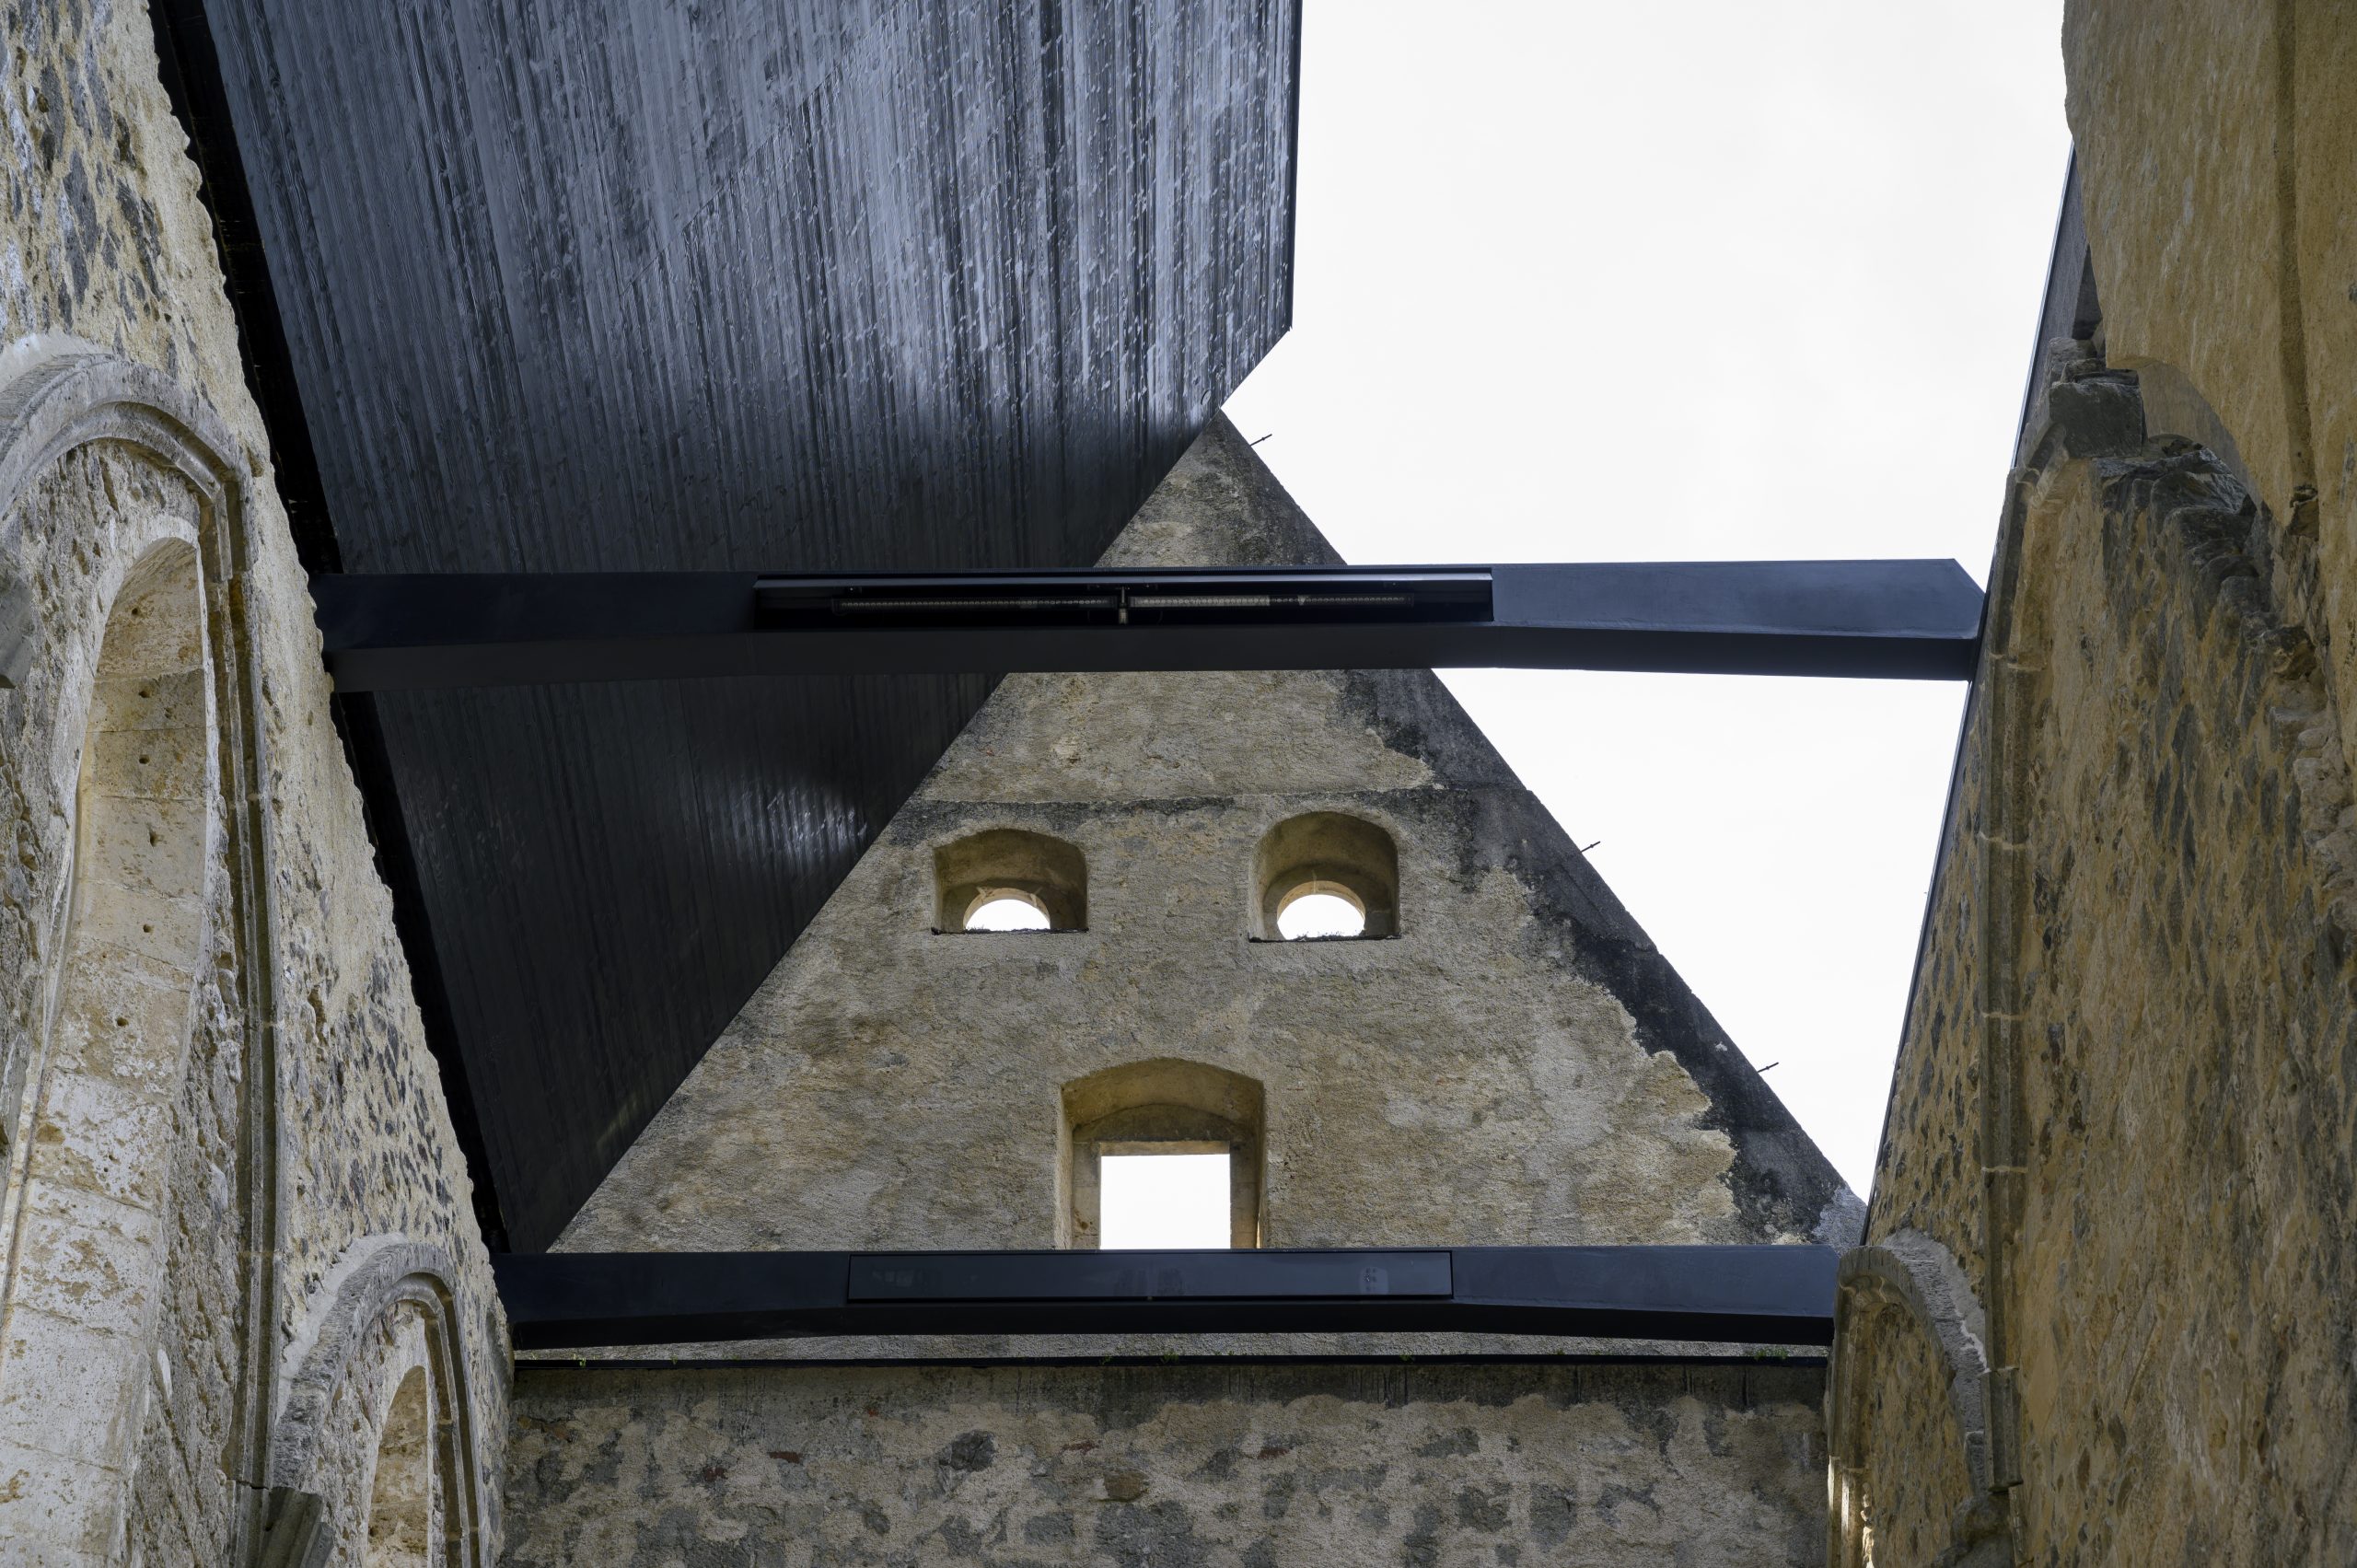 Žiče Carthusiast Church, movable roof